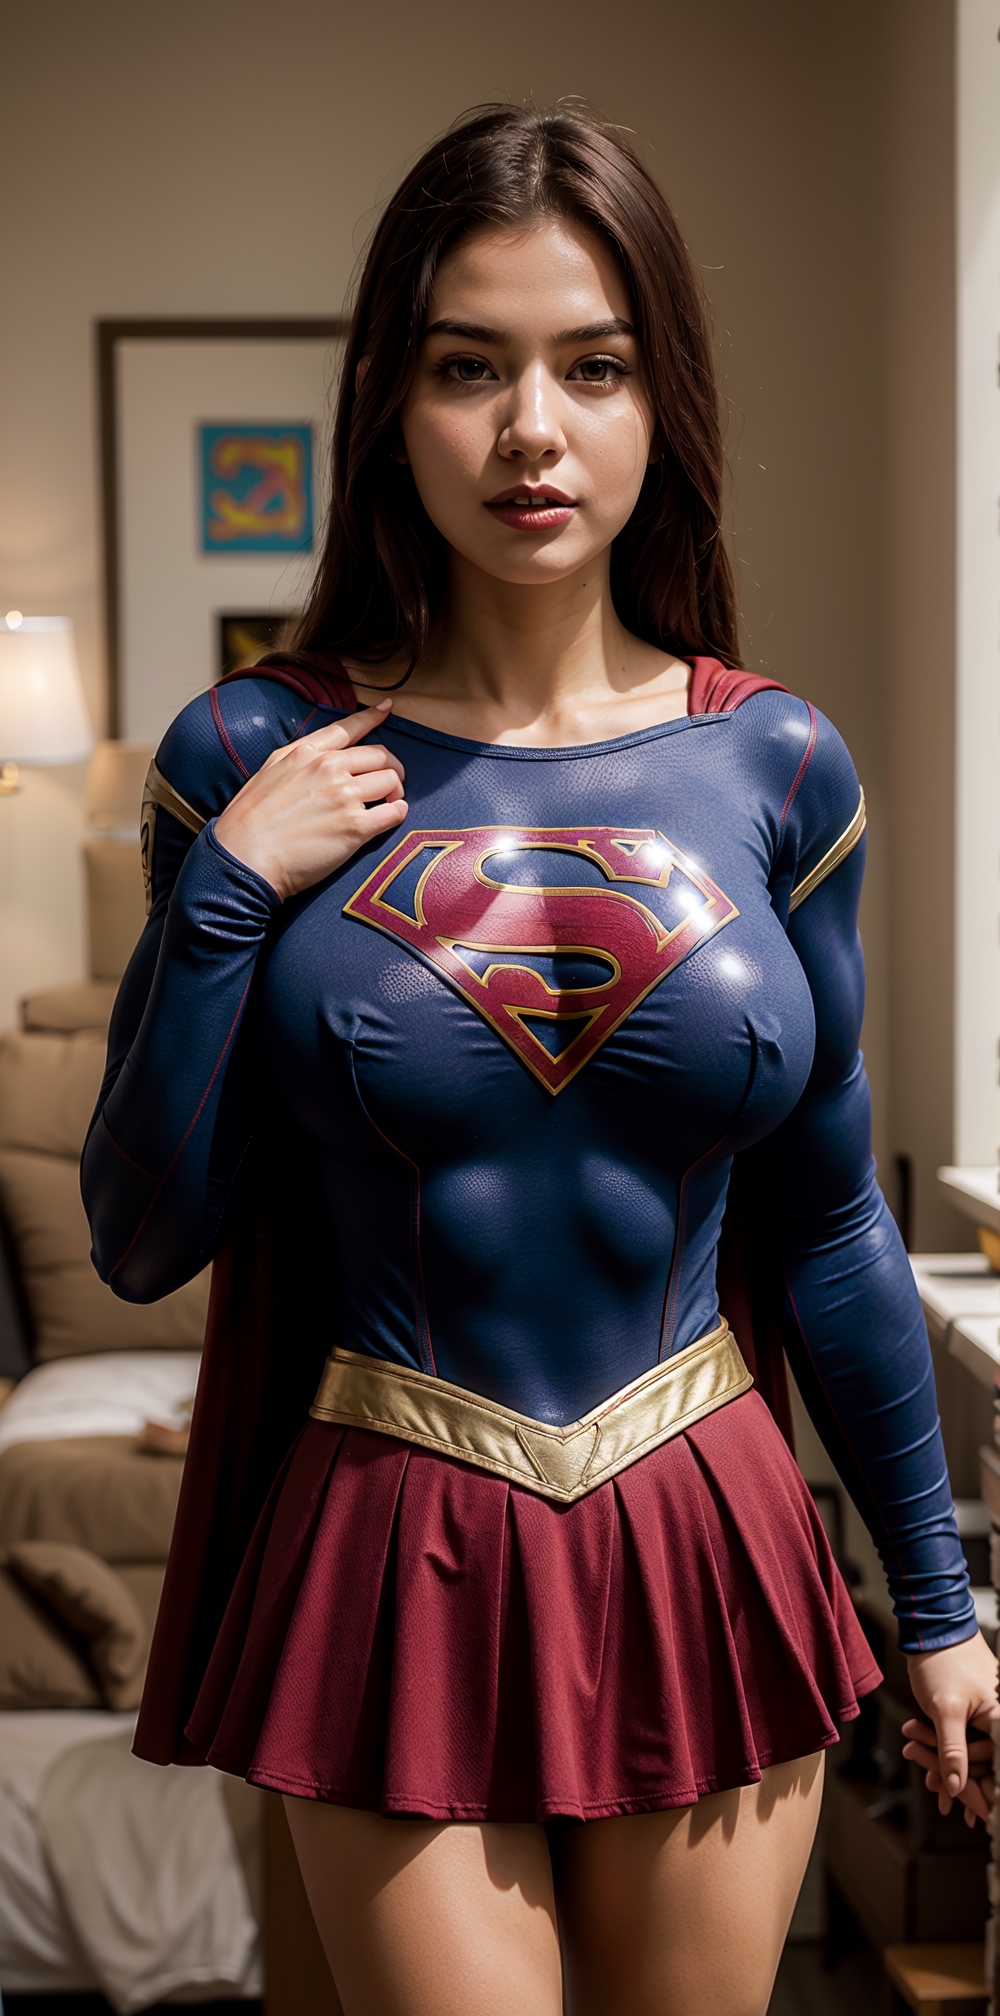 Supergirl big tits